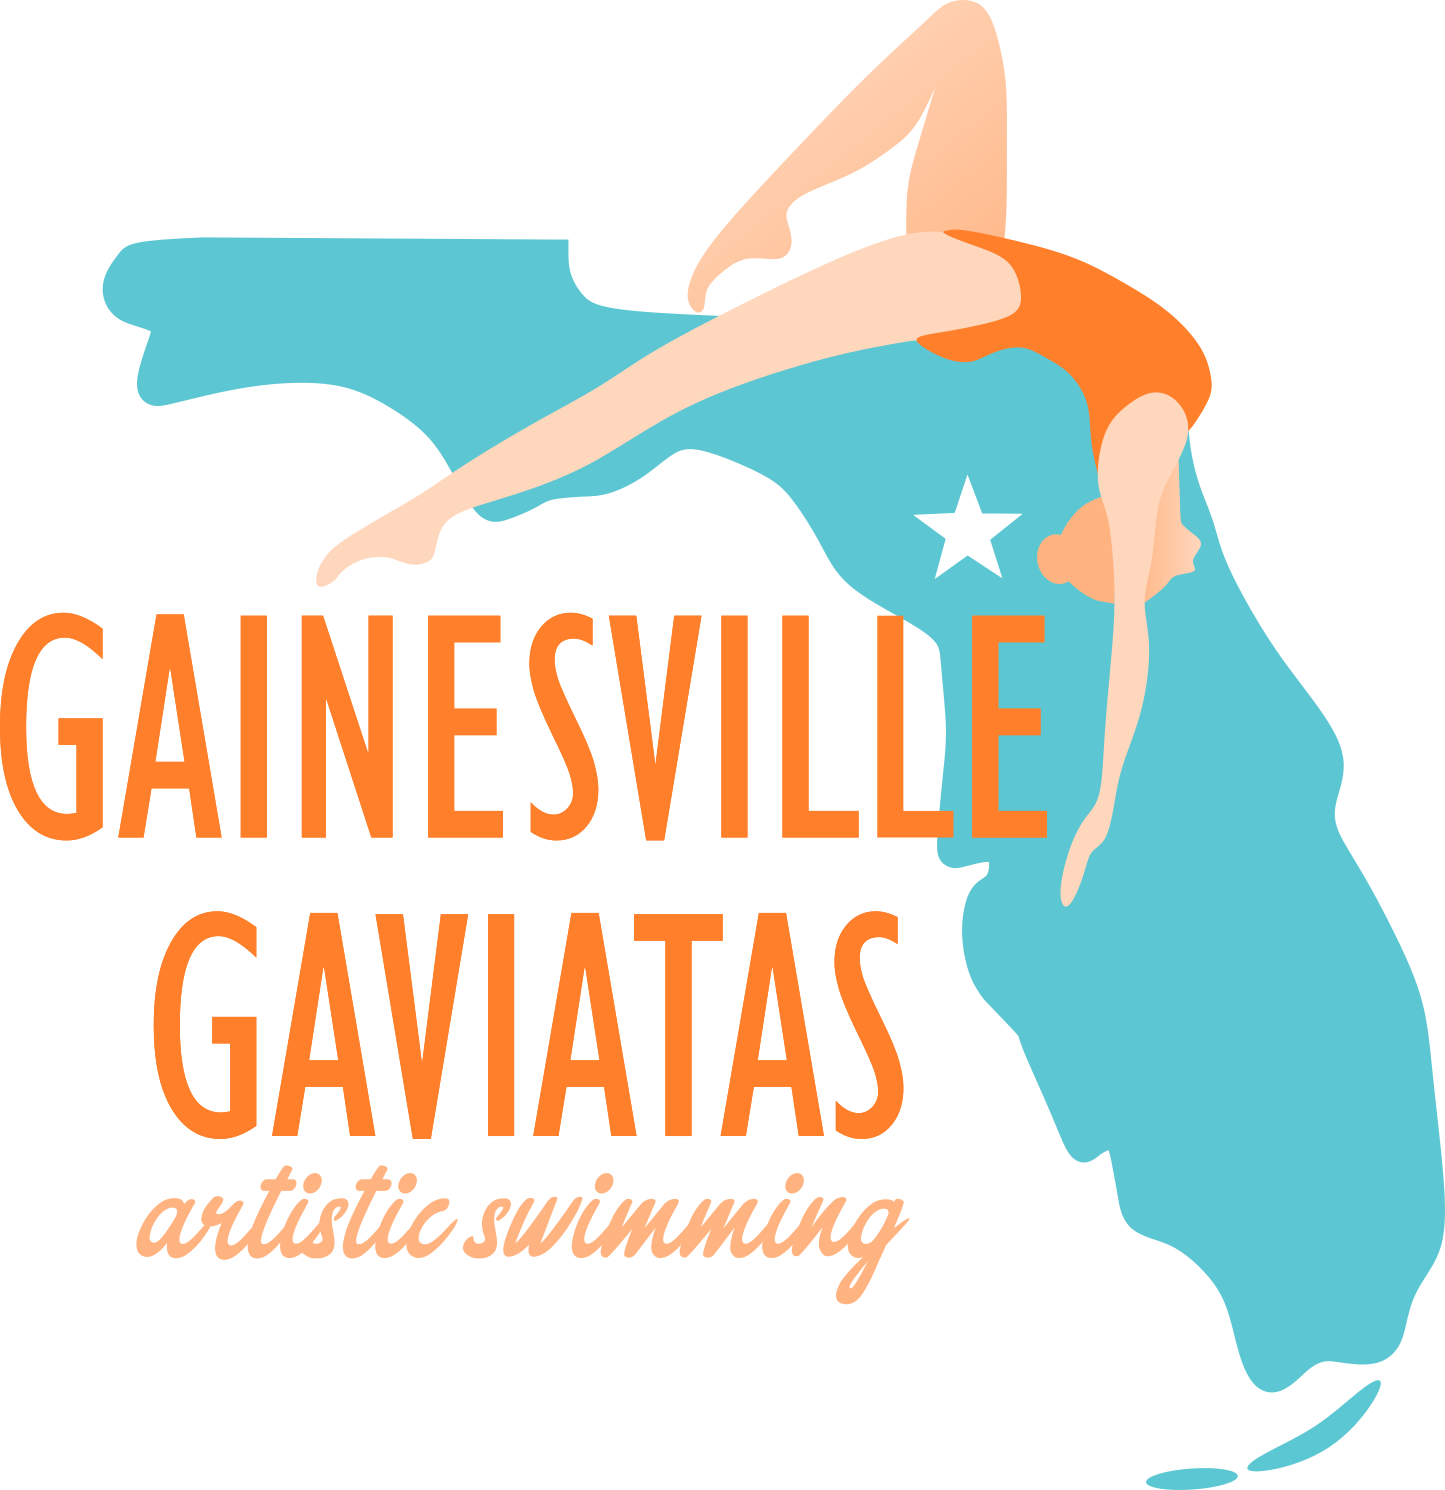 Gainesville Gaviatas